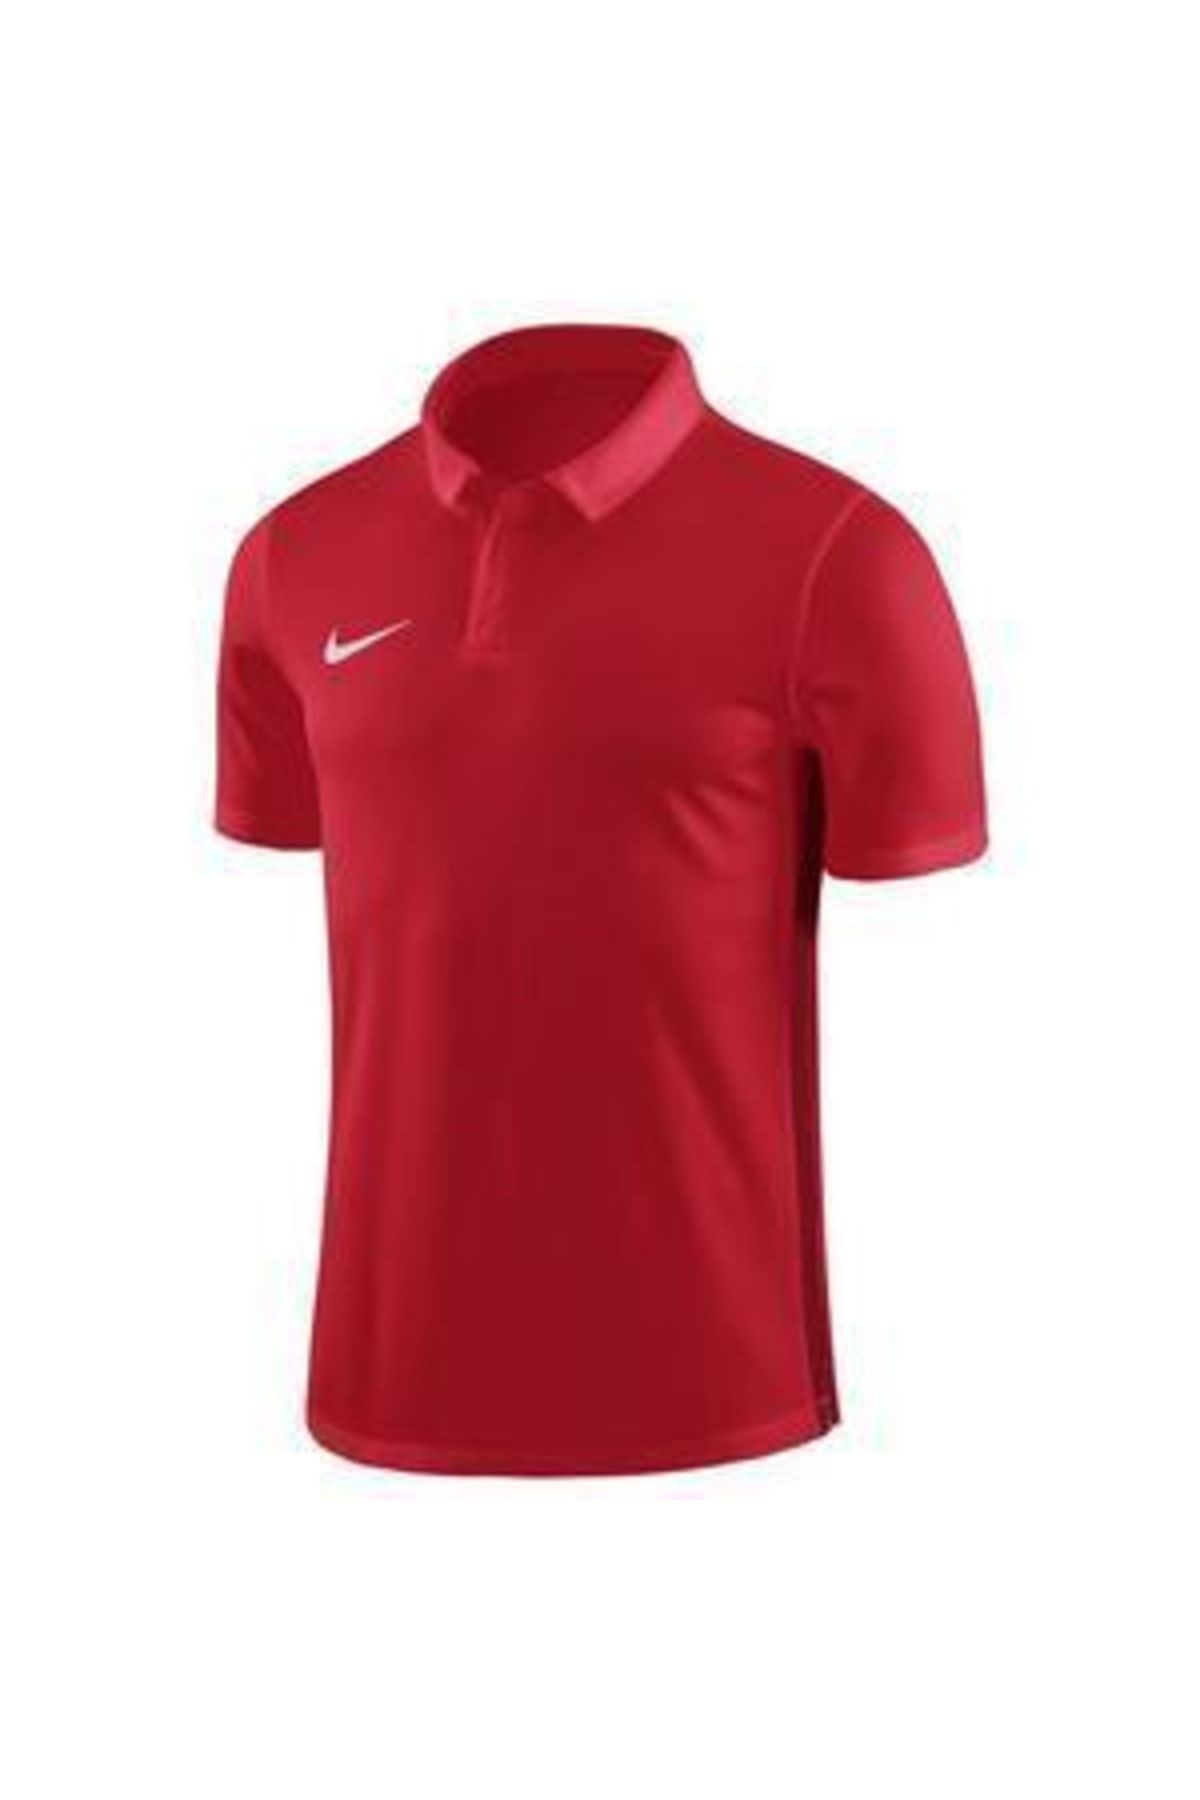 Nike Dry Academy18 Çocuk Kırmızı Futbol Tişört 899991-657